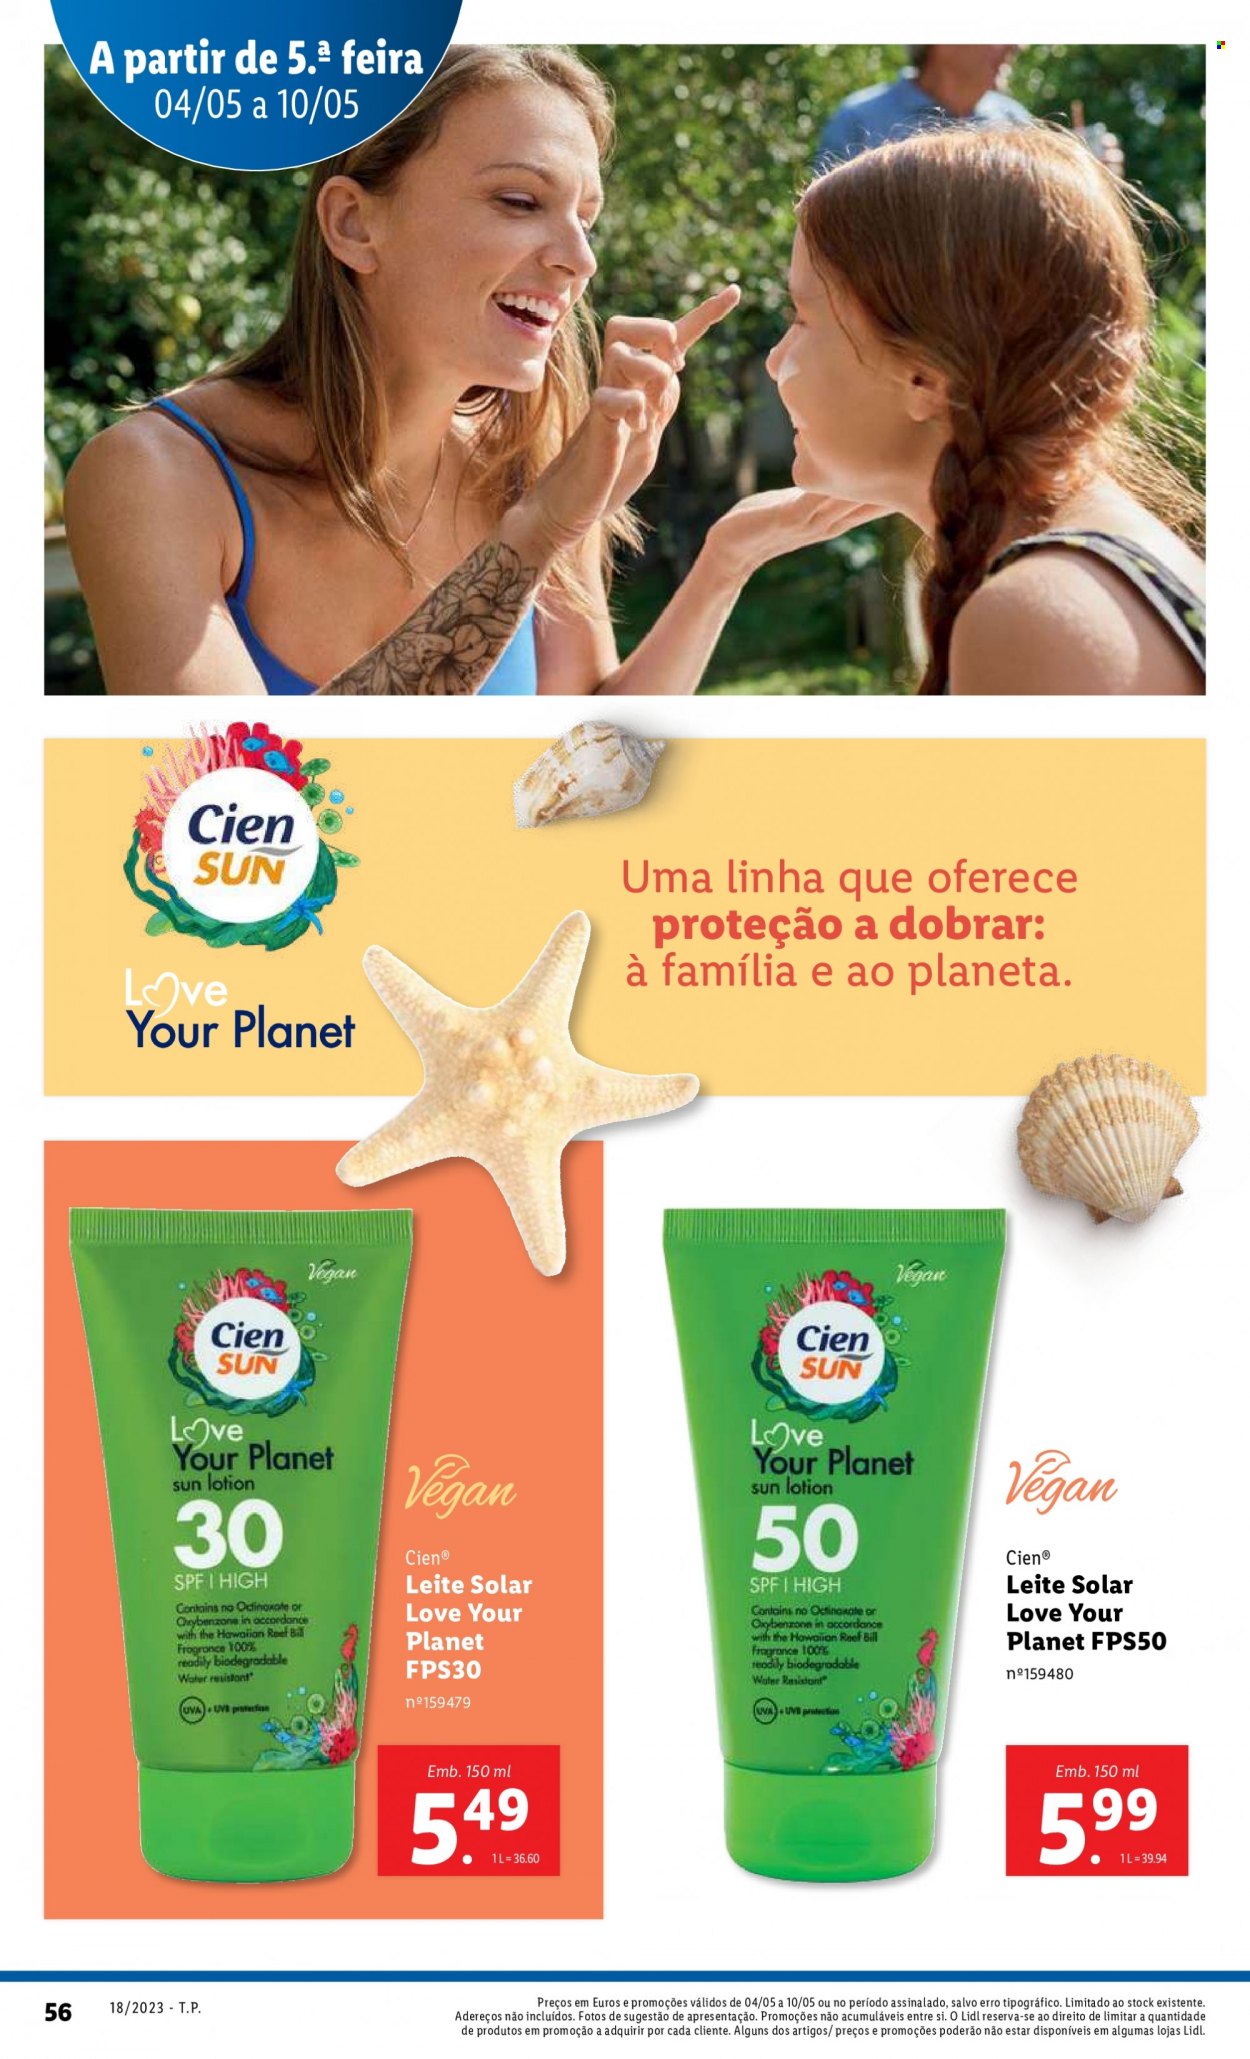 Folheto Lidl - Produtos em promoção - Cien®, leite solar. Página 56.